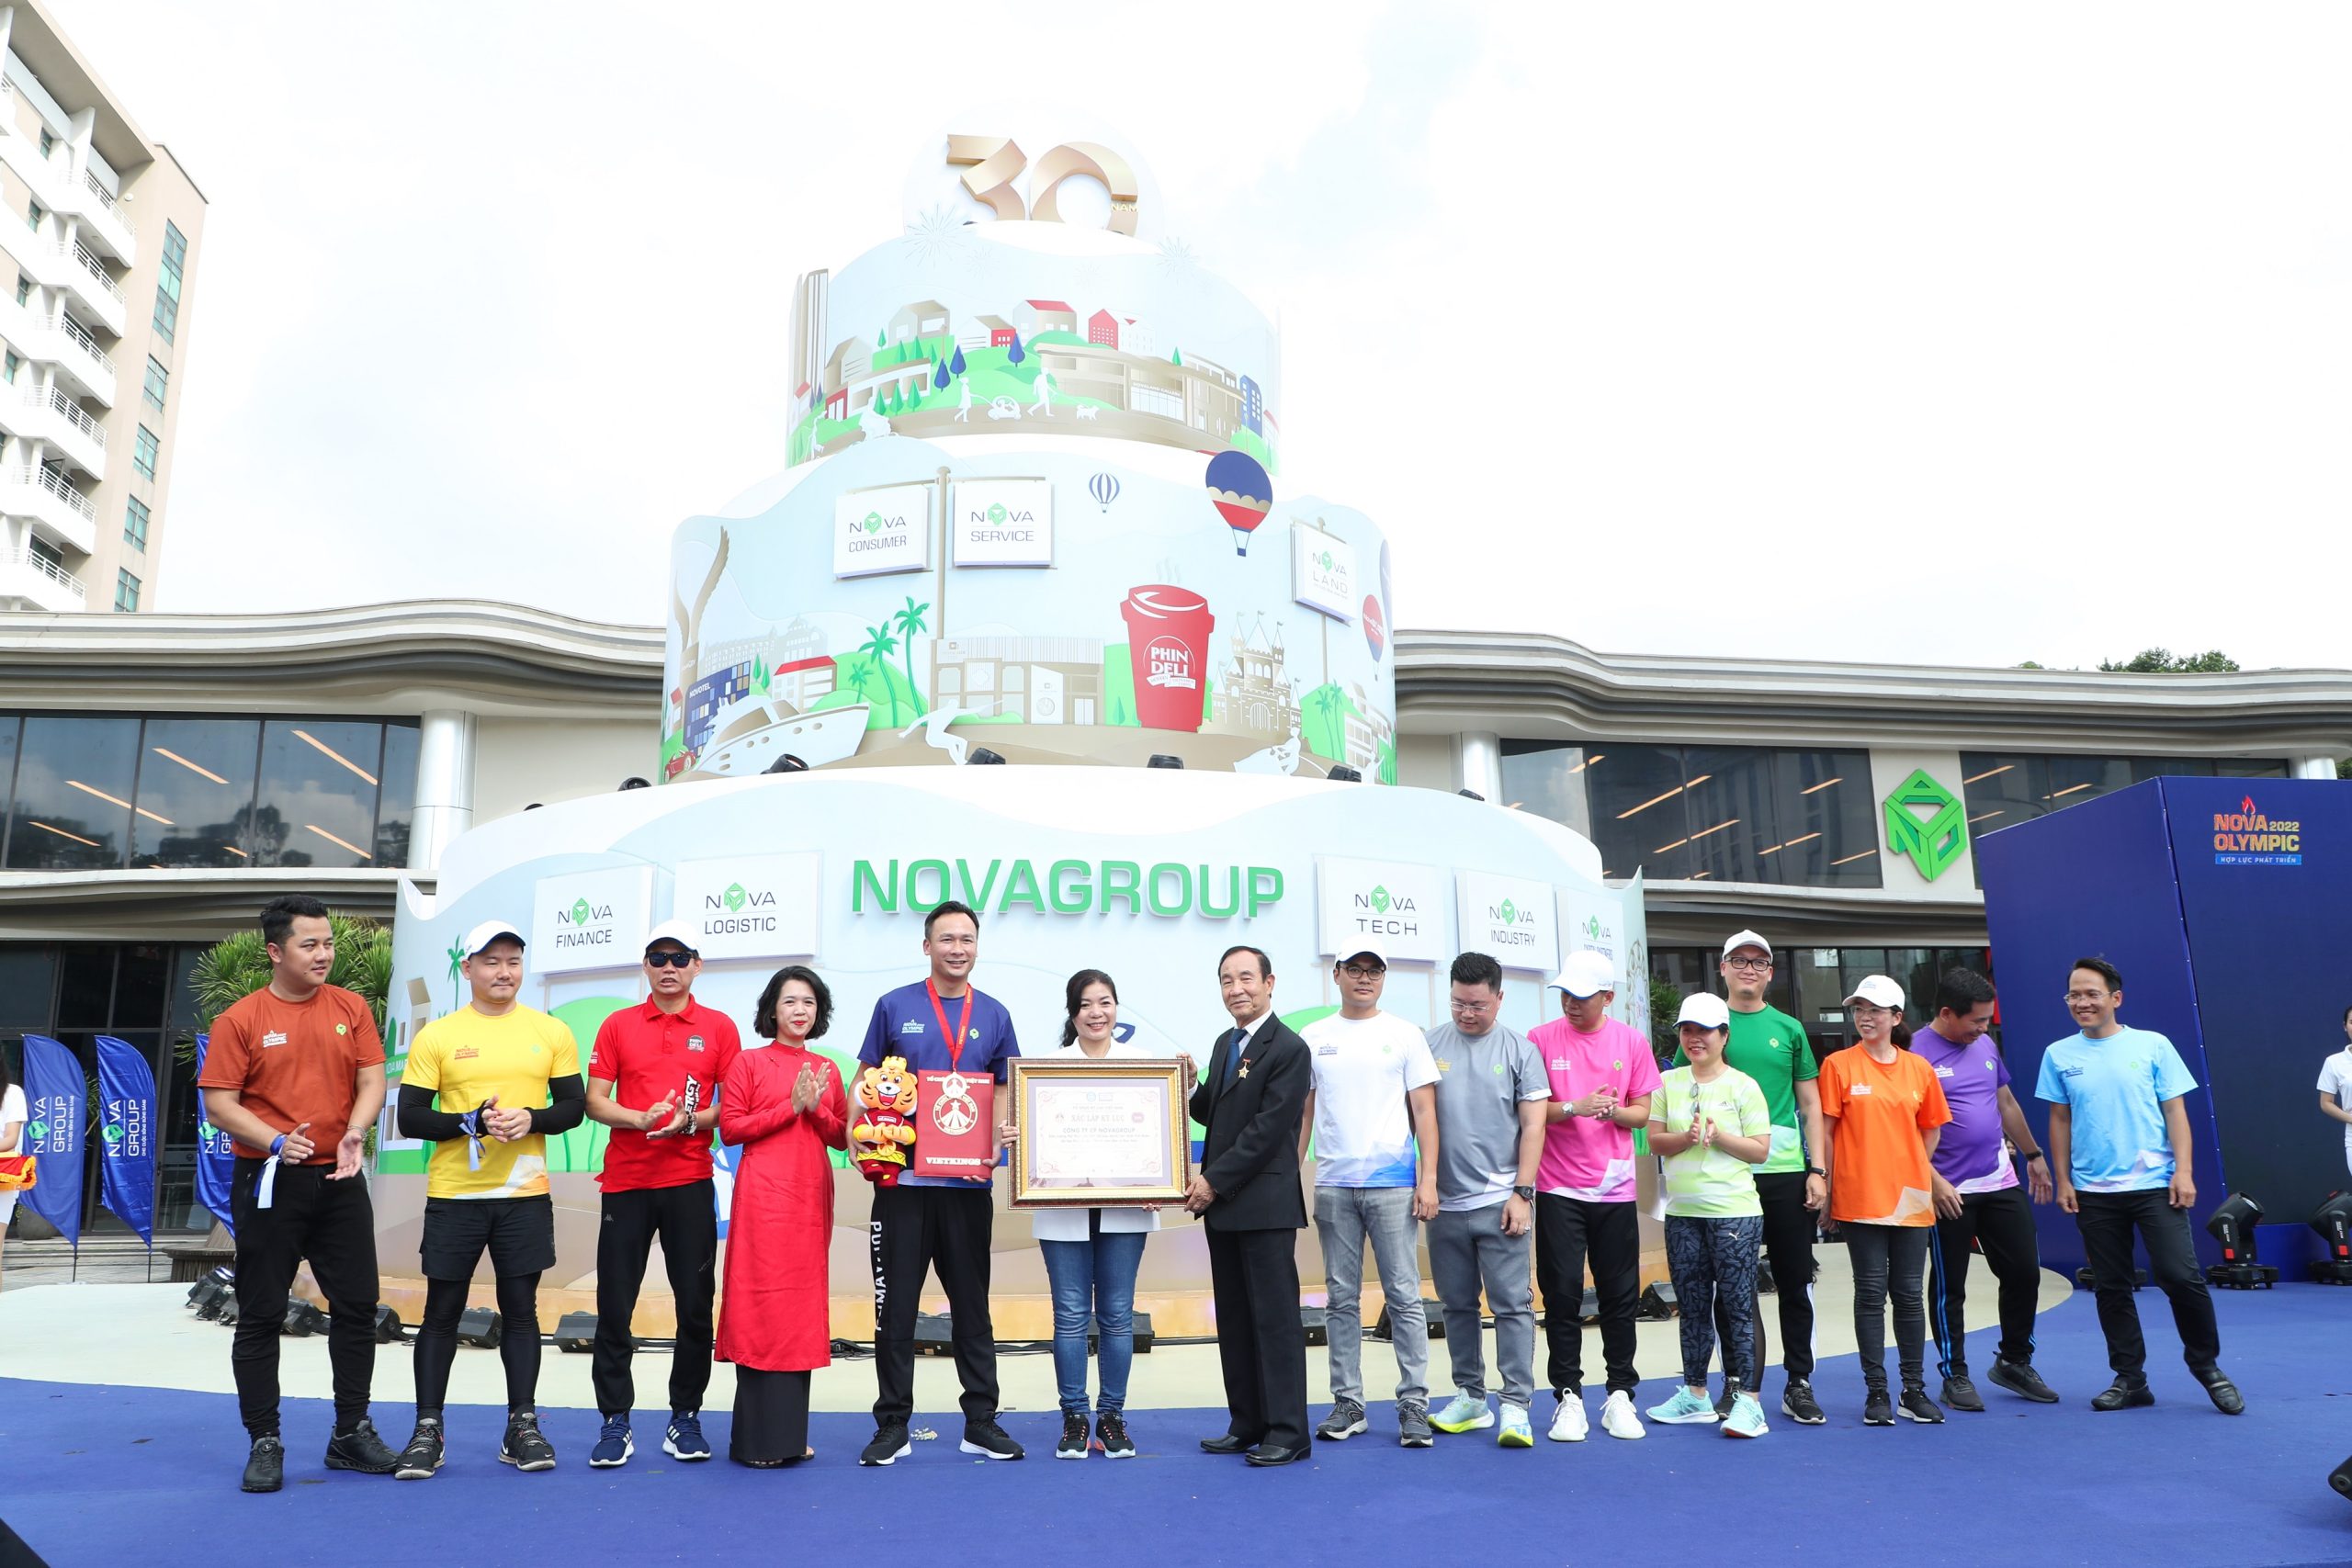  Đại diện NovaGroup vinh dự nhận Chứng nhận kỷ lục "Biểu tượng hội thao gắn BIB lớn nhất Việt Nam do tập thể cán bộ - nhân viên đơn vị thực hiện".